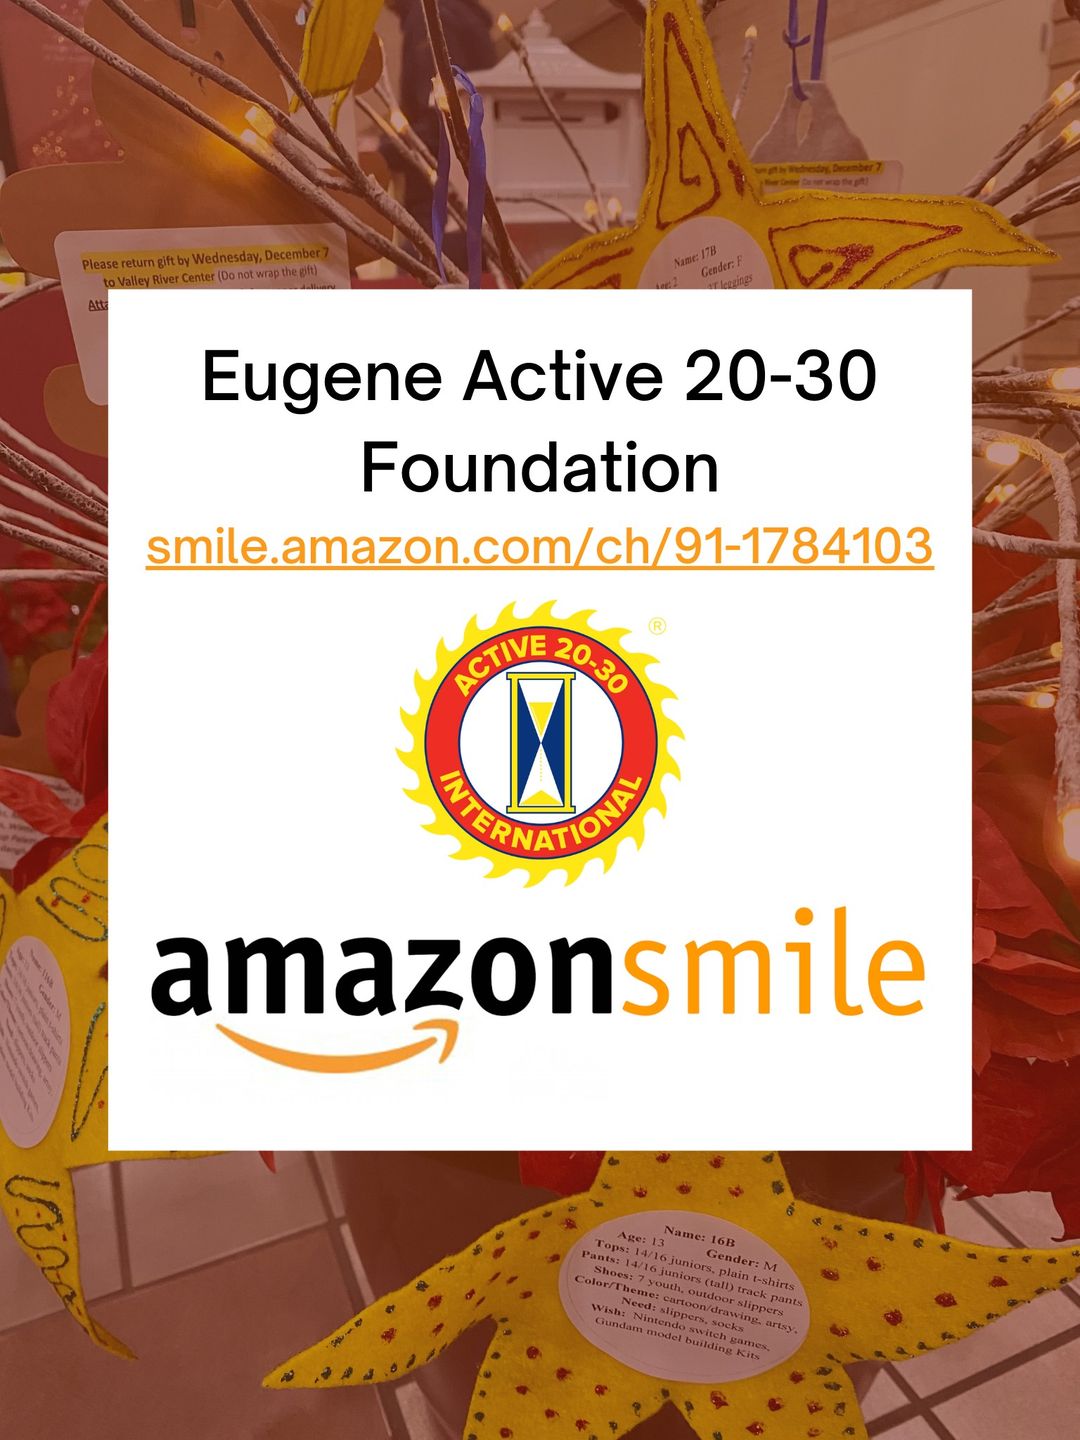 Eugene Active 20-30 Club